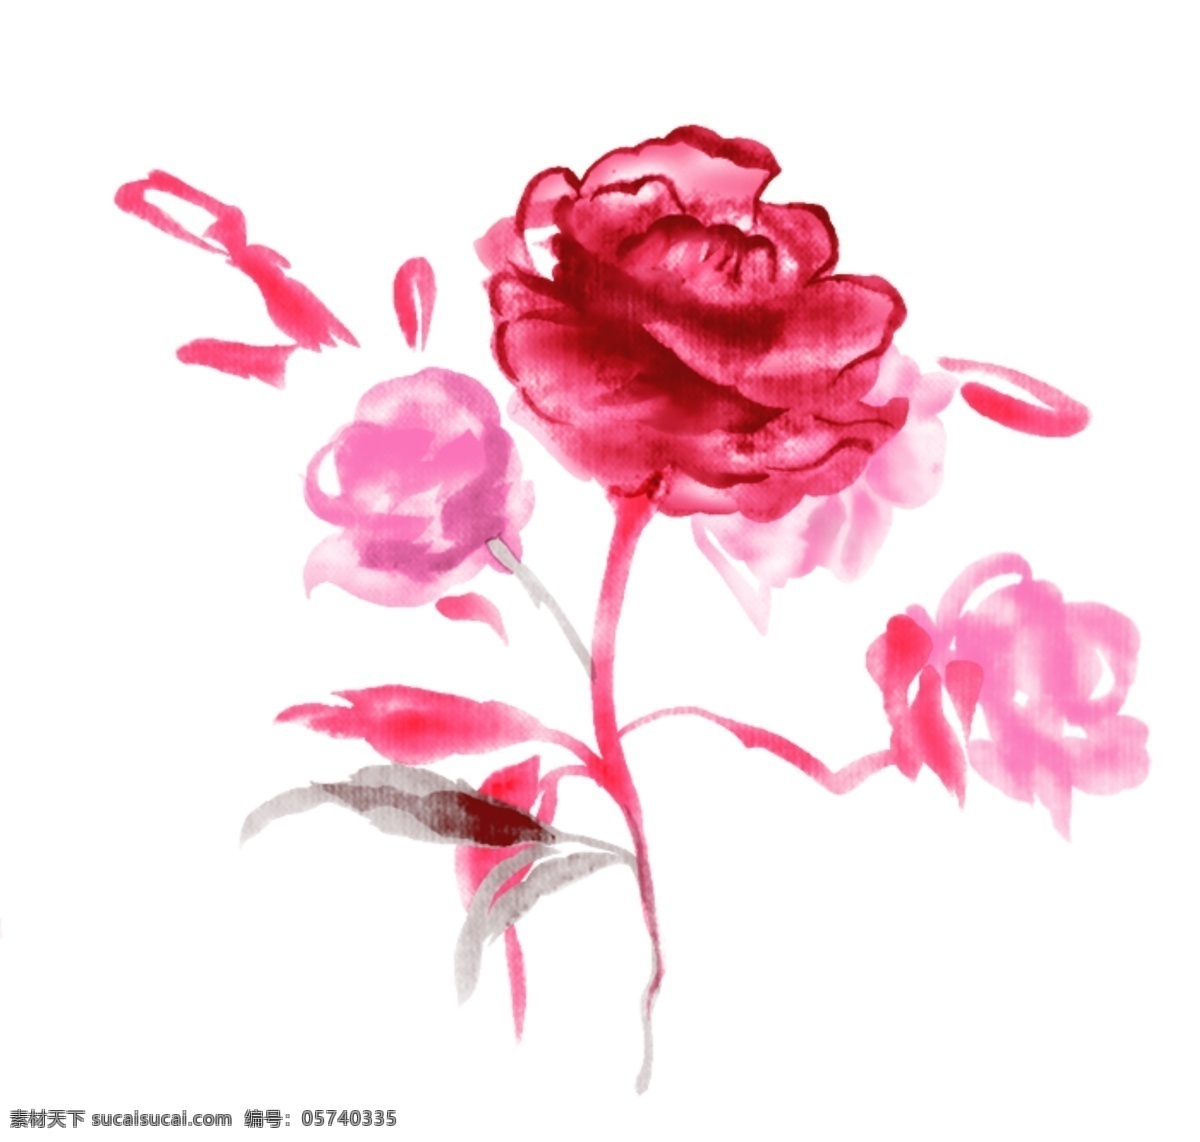 精美 水墨 手绘 玫瑰 玫瑰素材 psd素材 源文件库